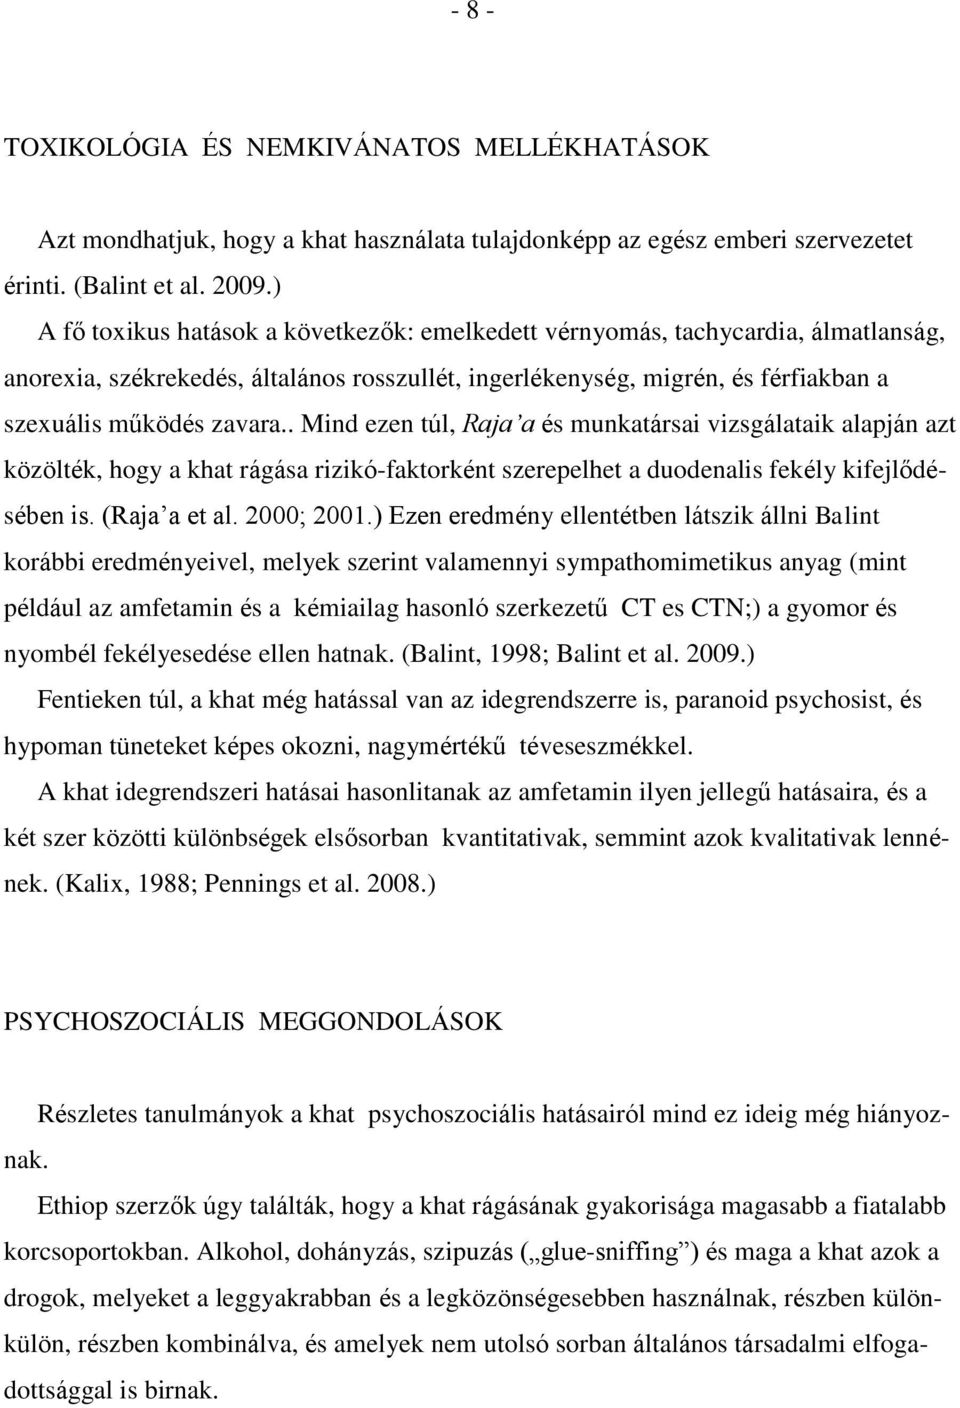 . Mind ezen túl, Raja a és munkatársai vizsgálataik alapján azt közölték, hogy a khat rágása rizikó-faktorként szerepelhet a duodenalis fekély kifejlődésében is. (Raja a et al. 2000; 2001.